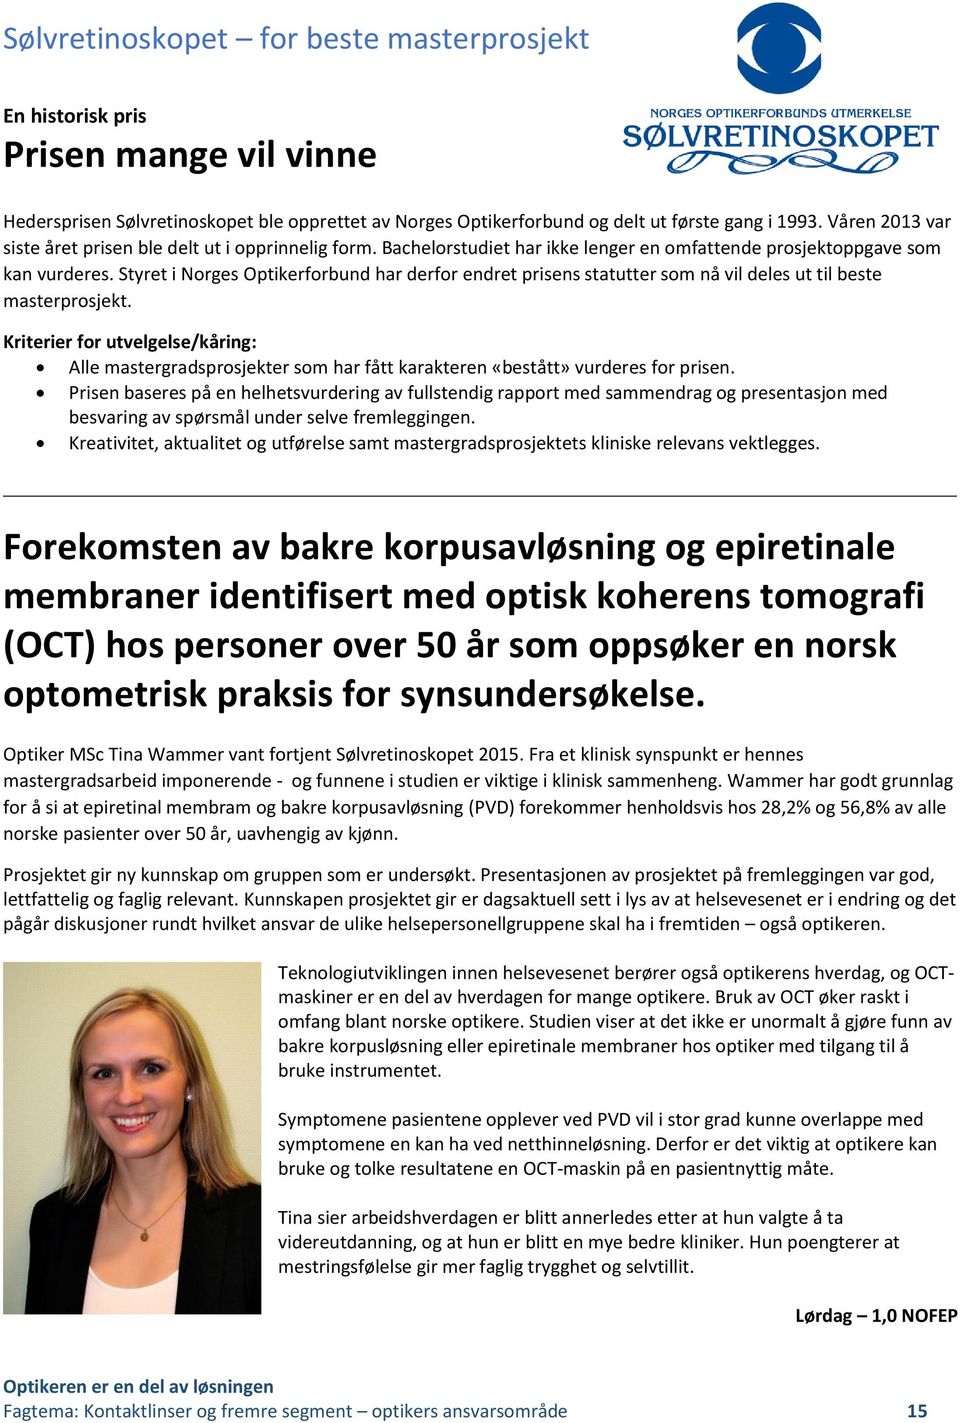 Styret i Norges Optikerforbund har derfor endret prisens statutter som nå vil deles ut til beste masterprosjekt.